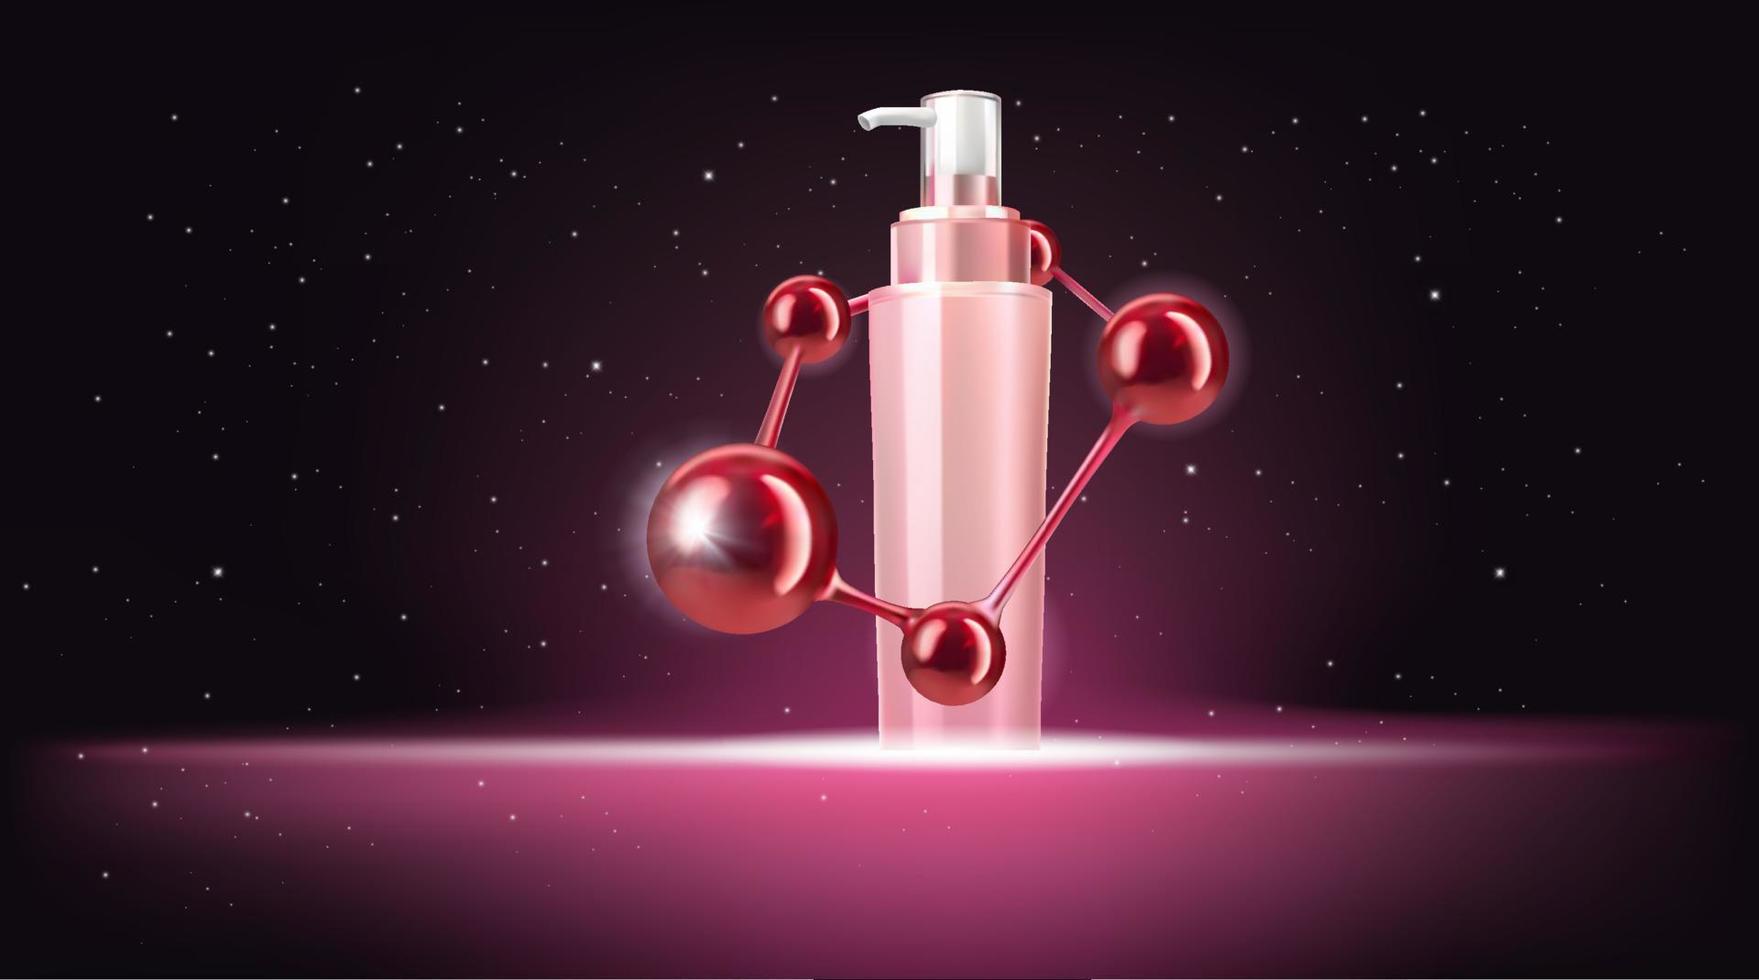 prodotti per la cura della pelle di bellezza con molecola rossa. banner mockup di bottiglie cosmetiche. vettore 3d realistico